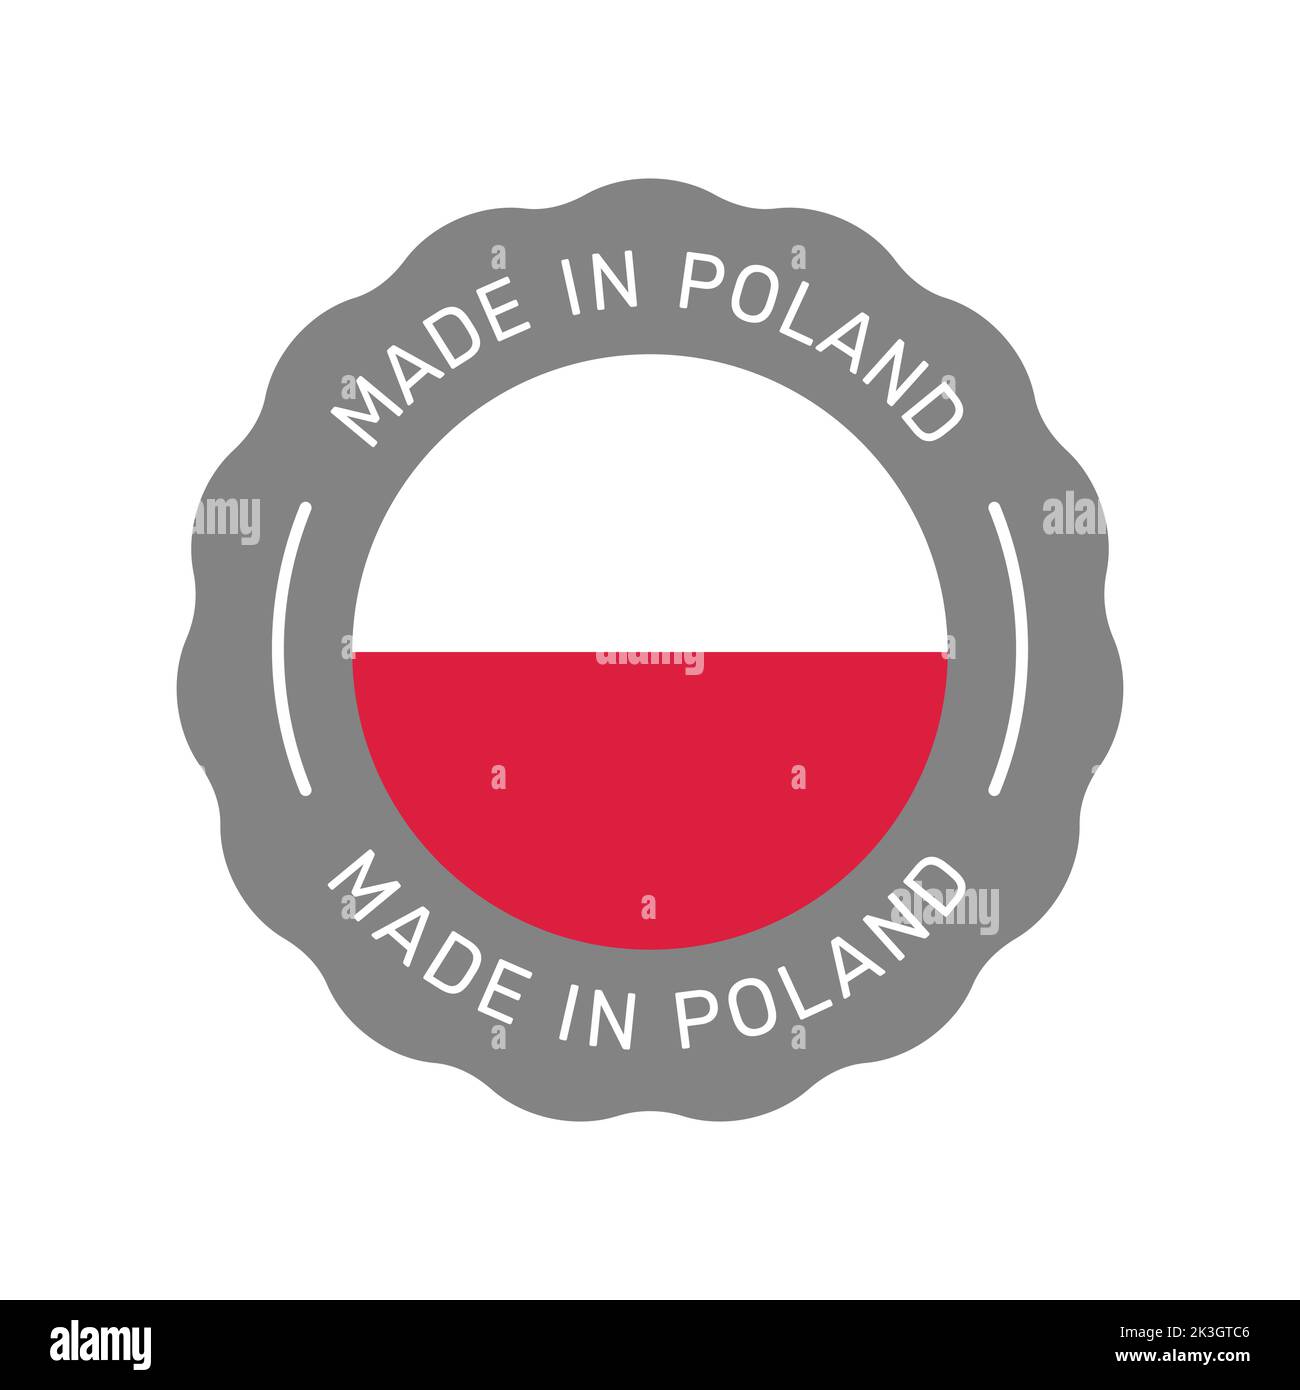 Badge vettoriale colorato Made in Poland. Etichetta adesiva con bandiera polacca. Illustrazione Vettoriale